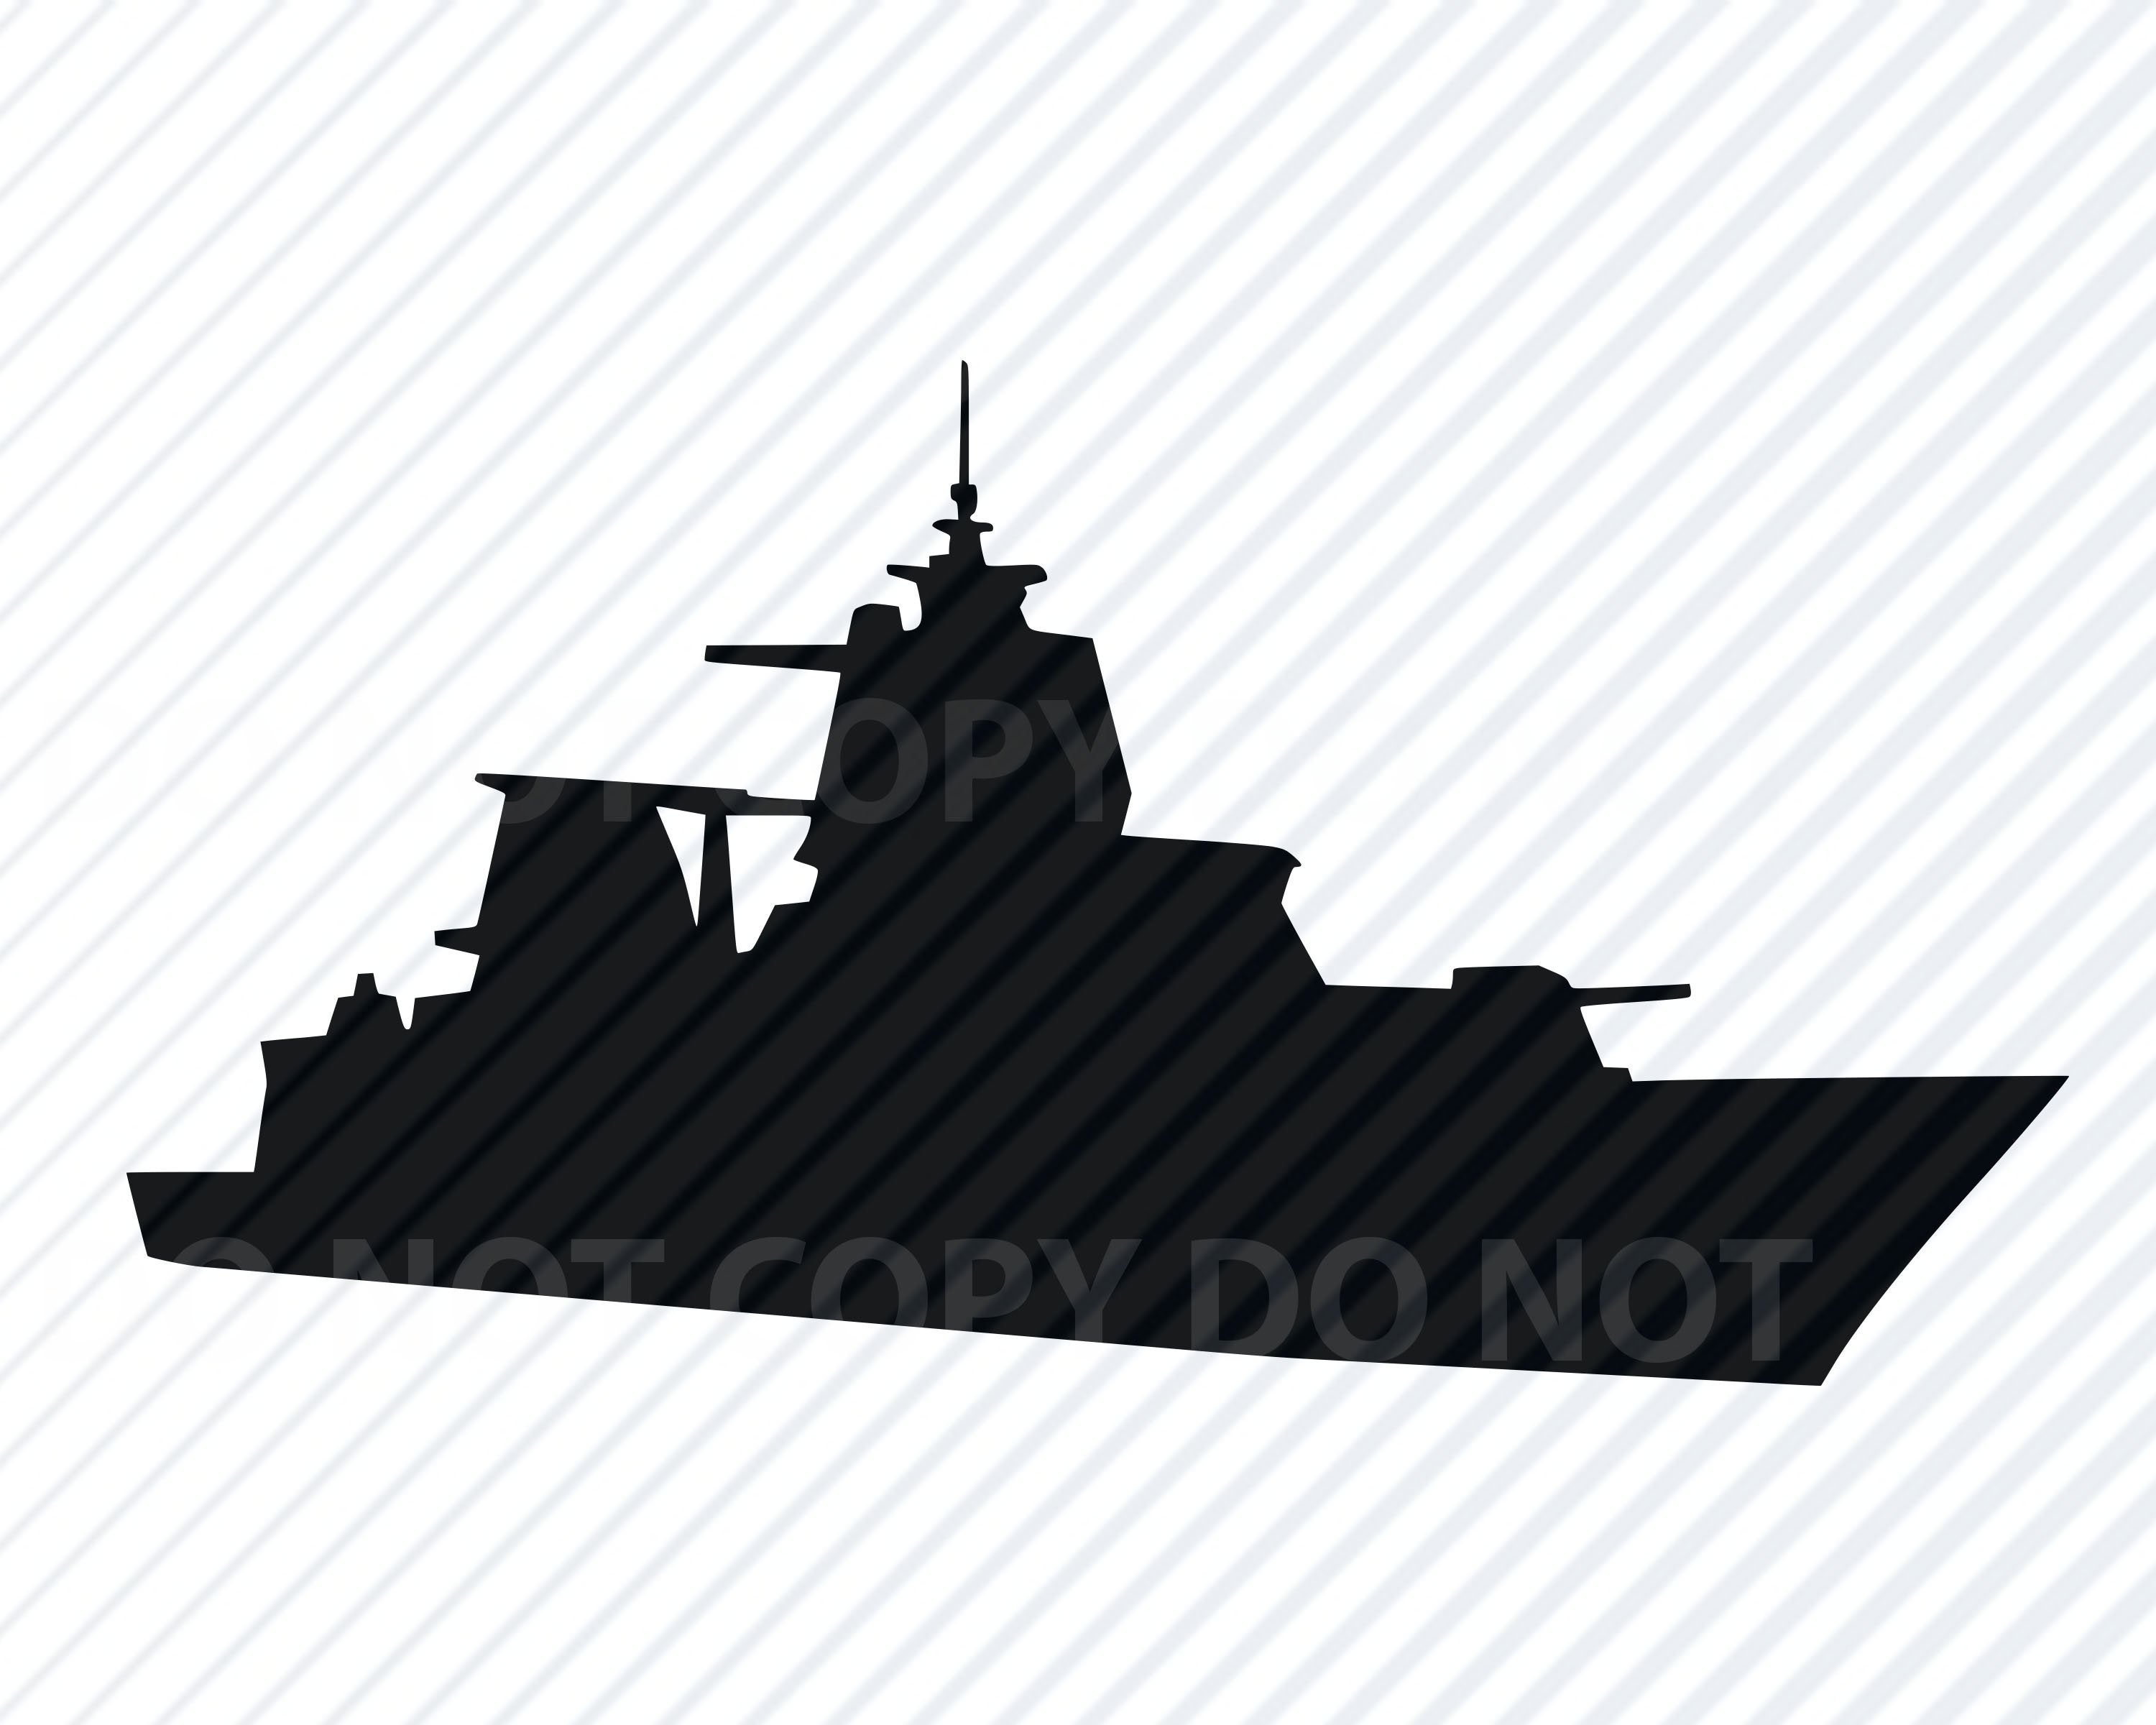 battleship clipart vector